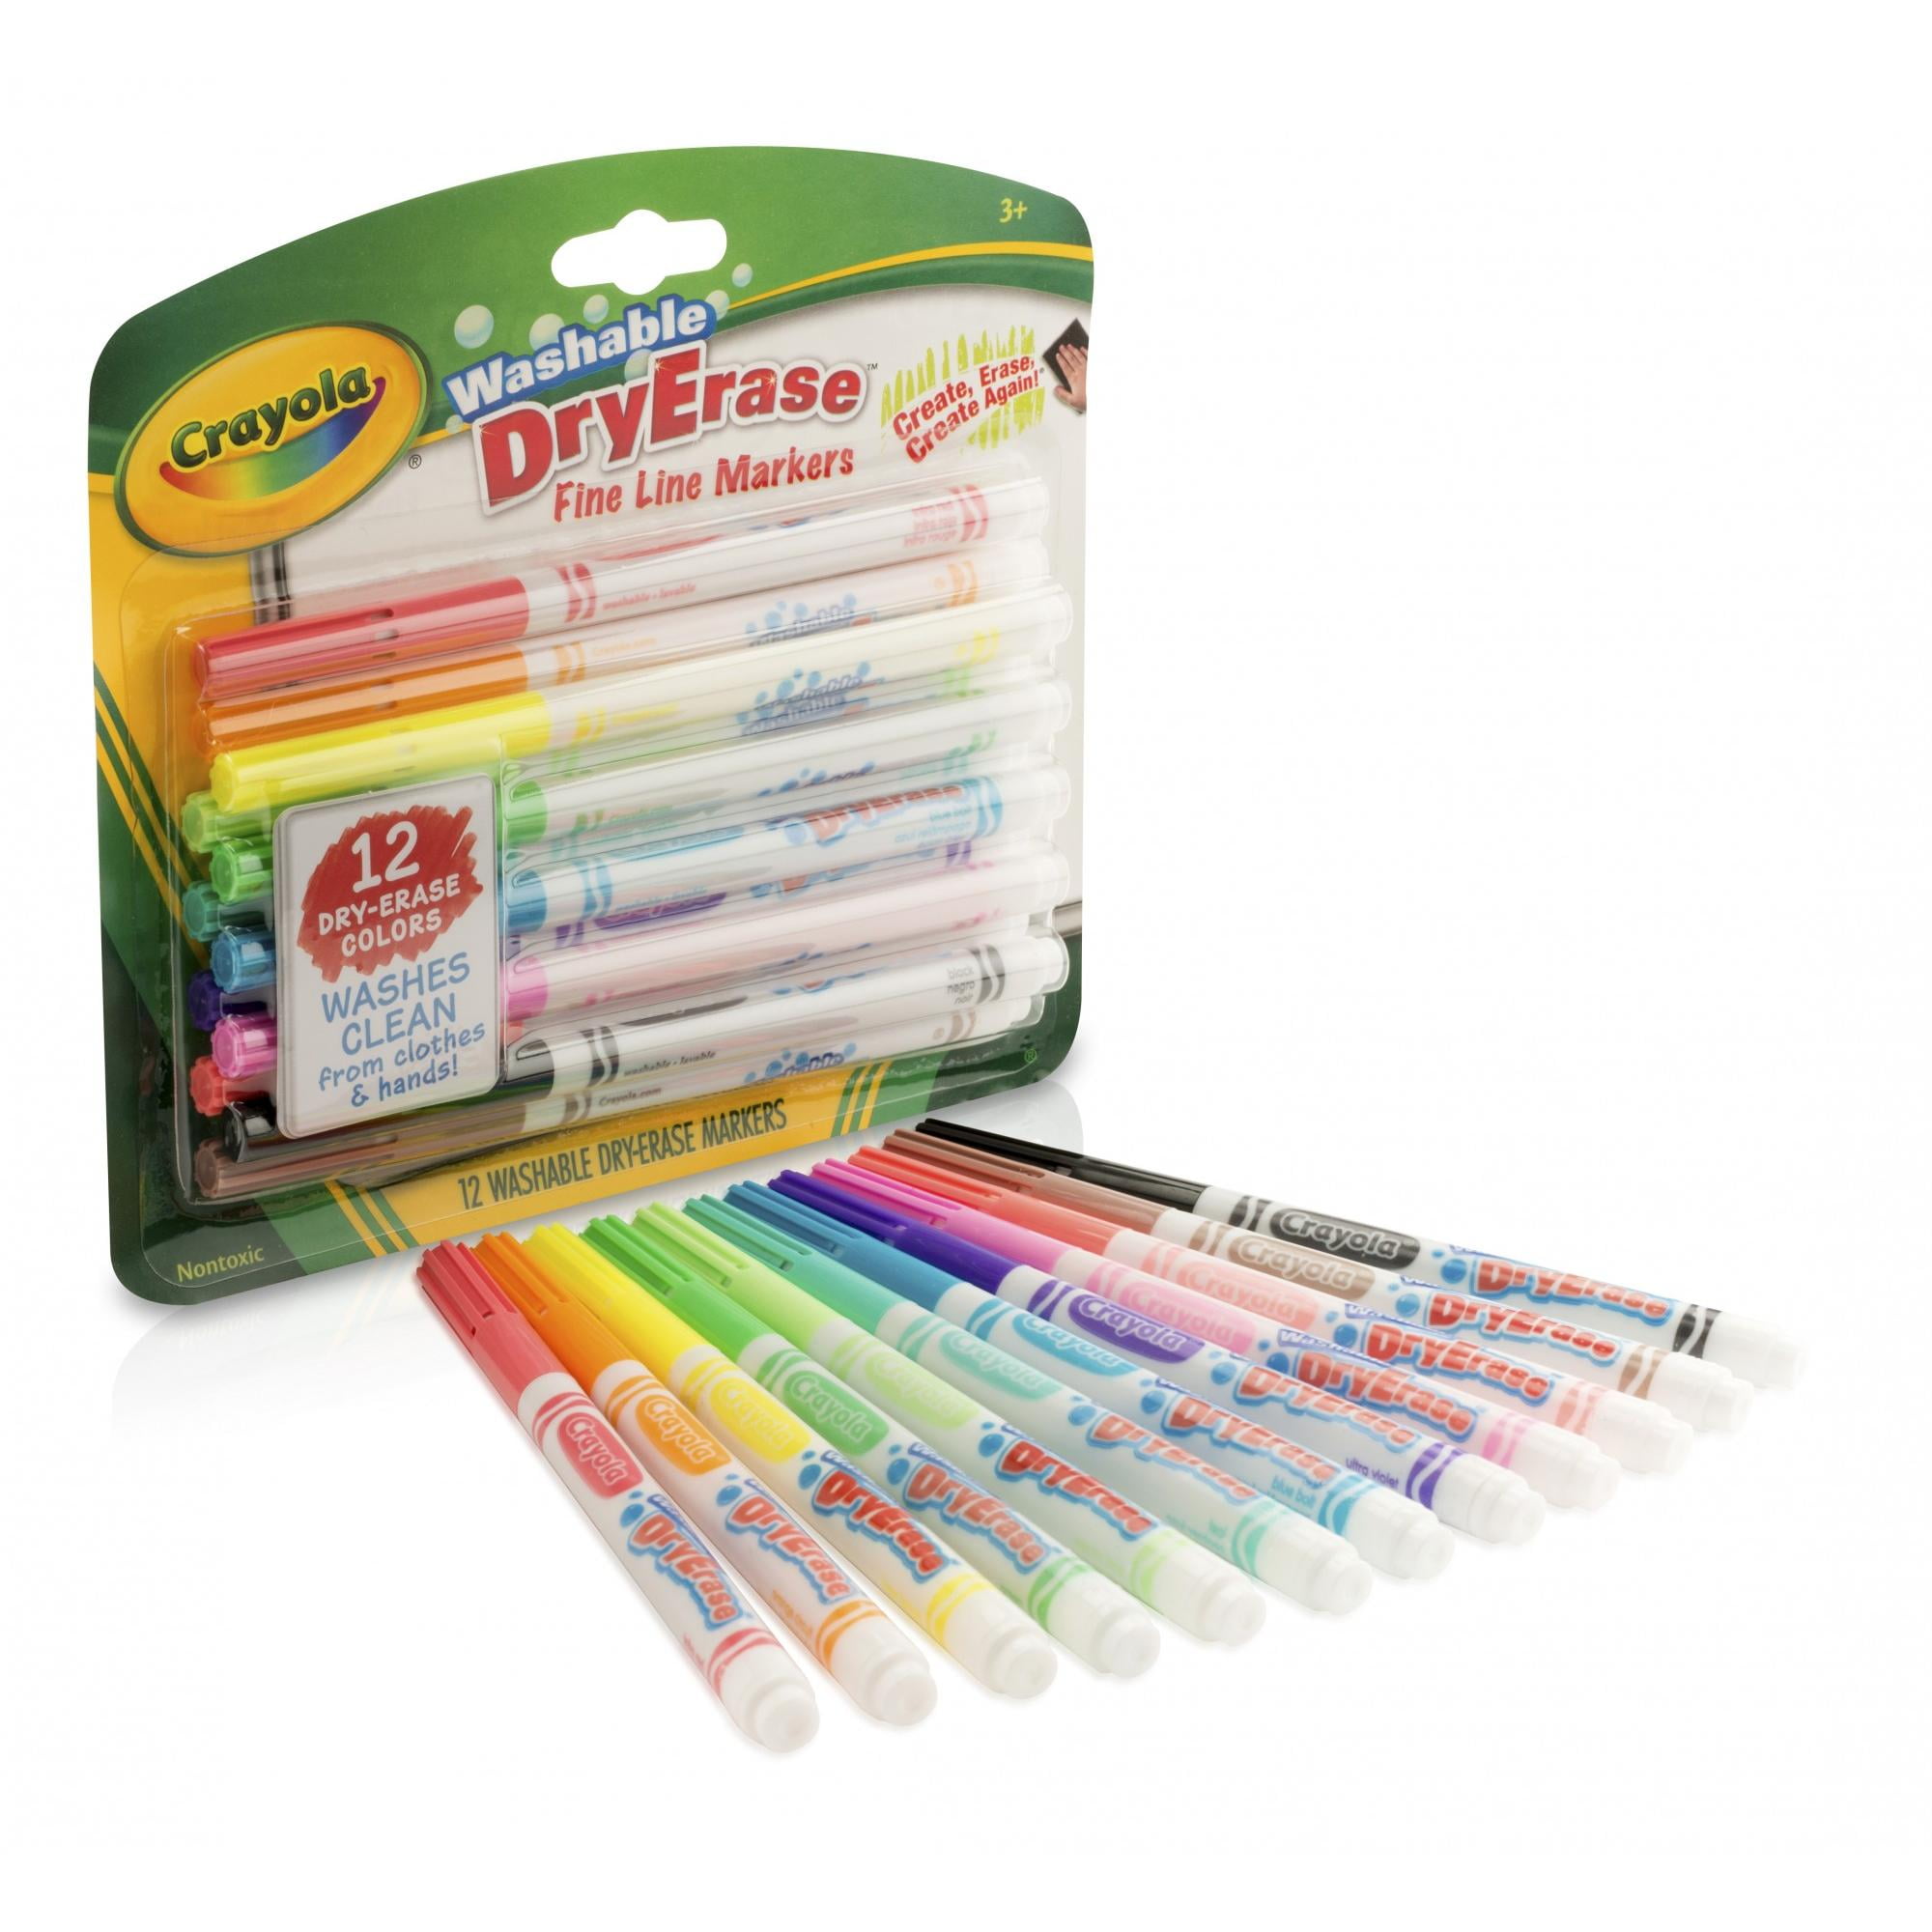 Dry Erase Crayons, Crayola